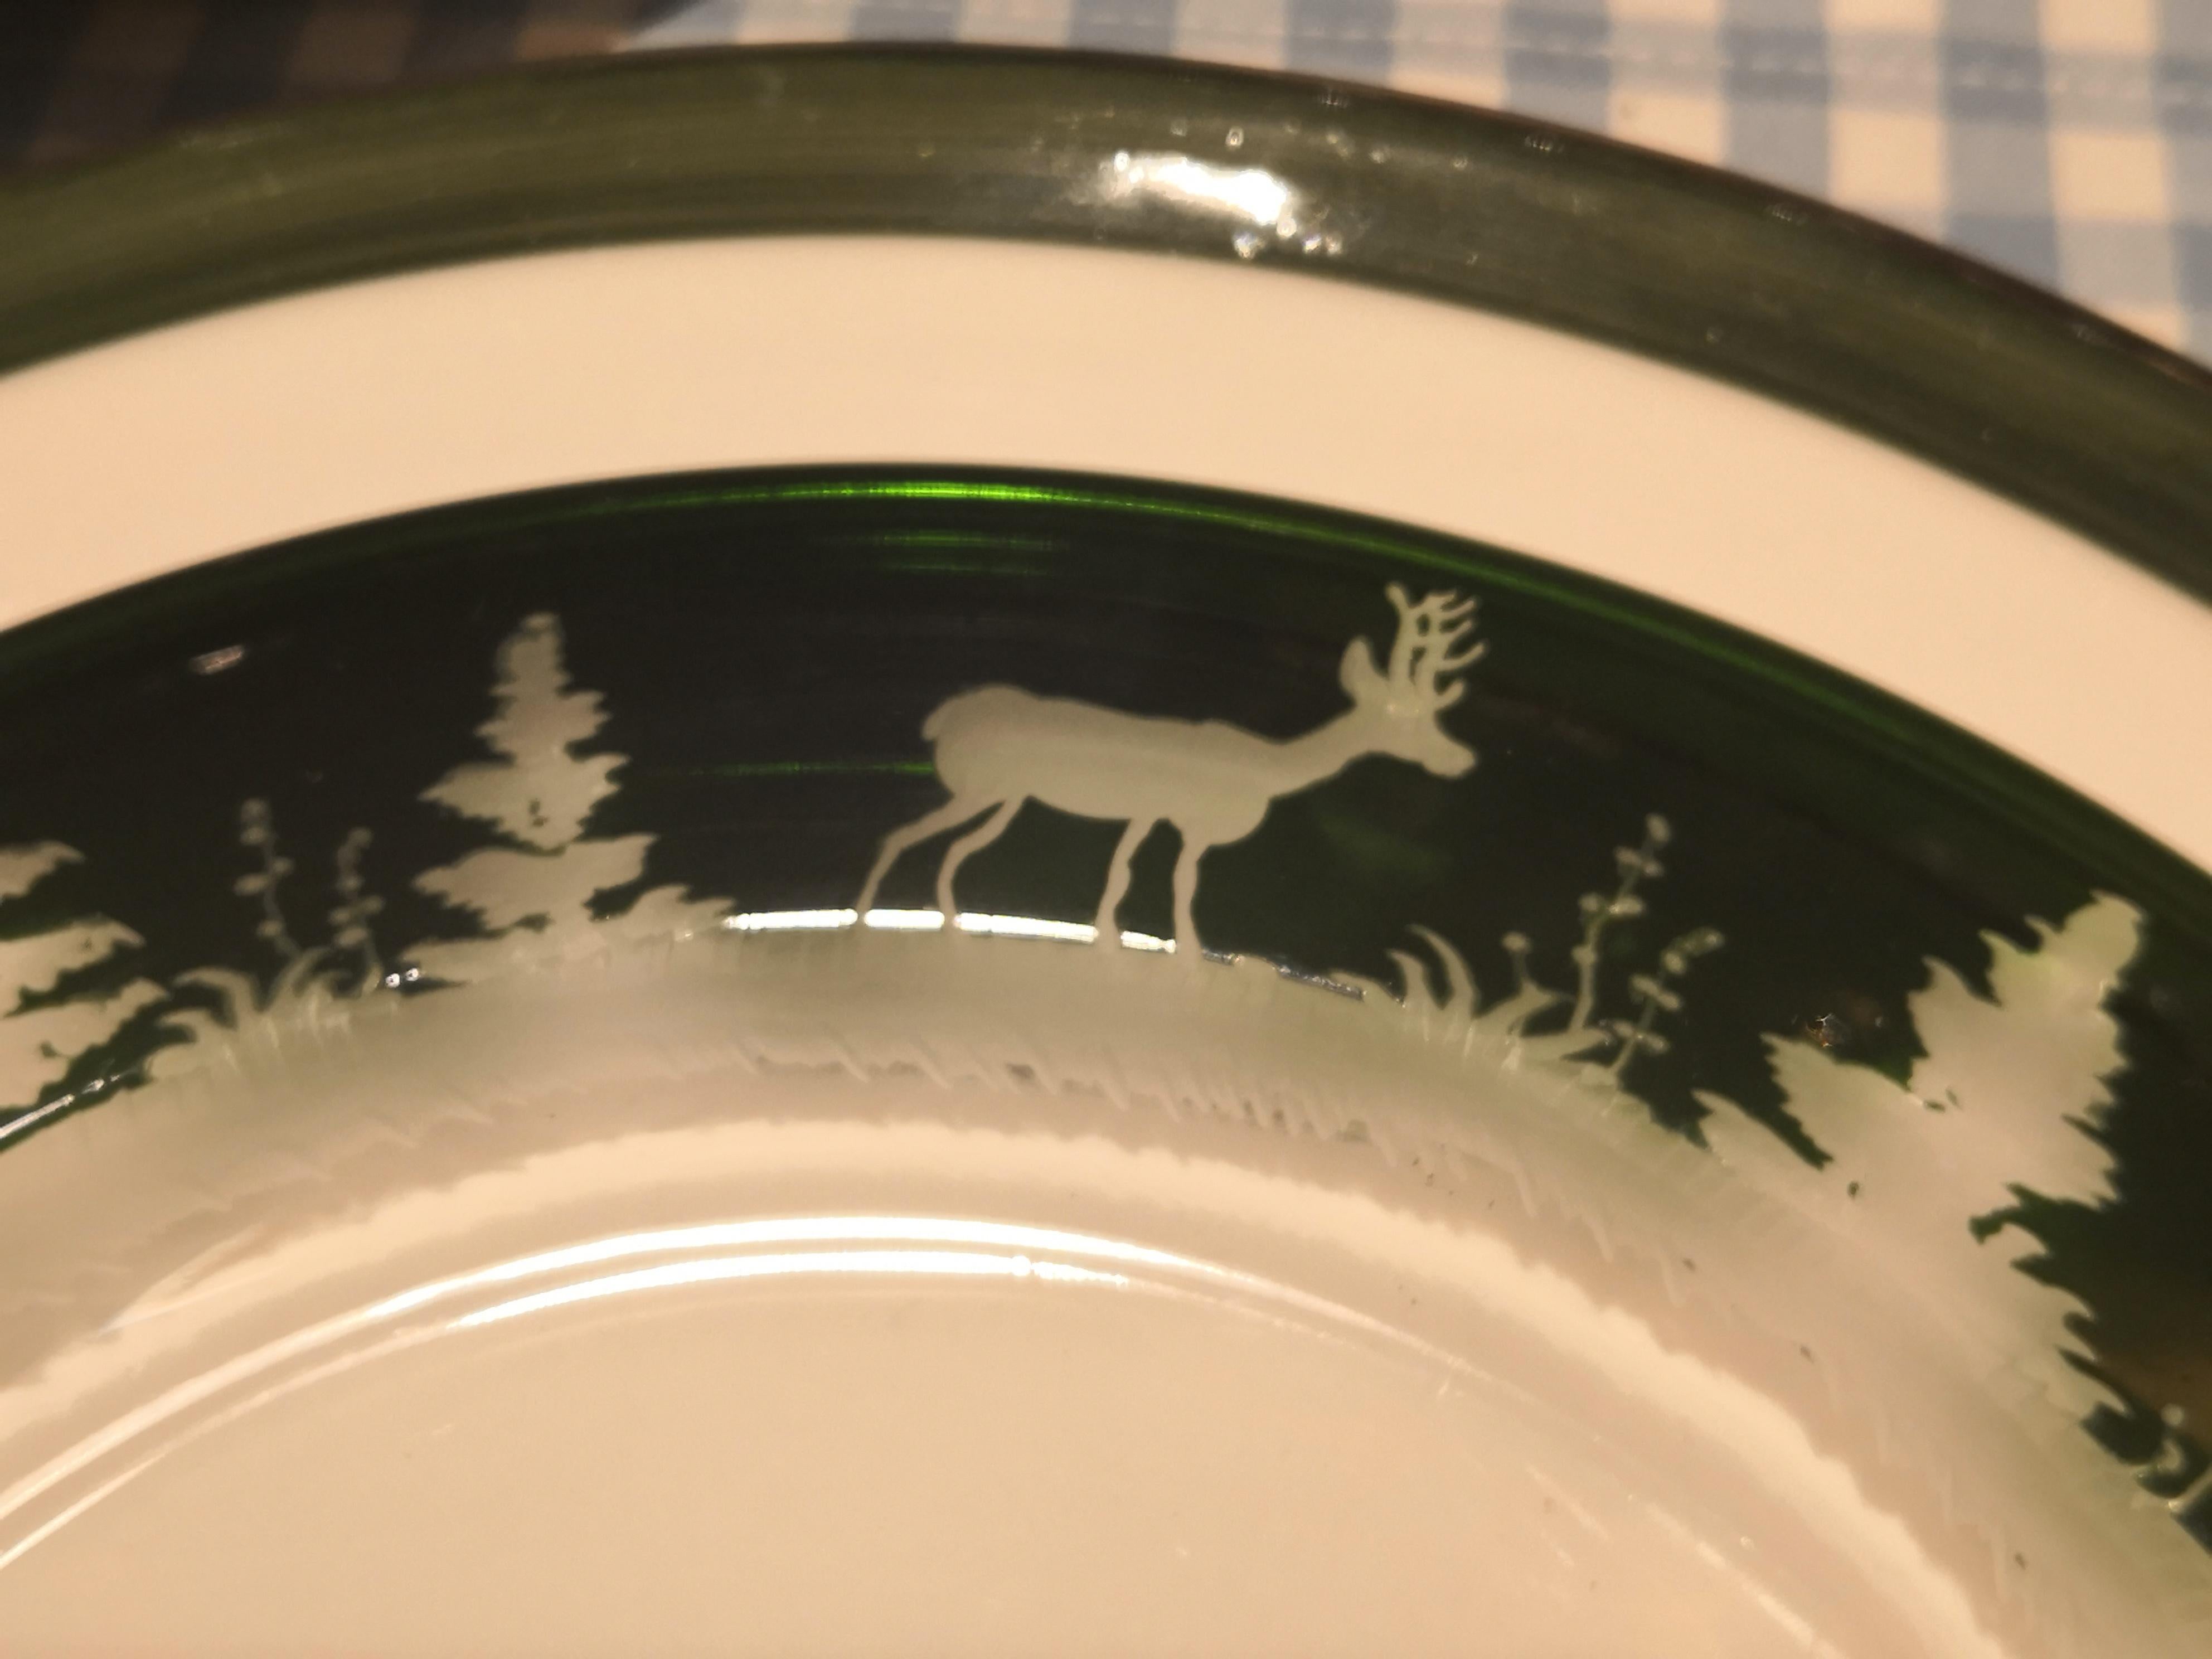 Ensemble de six assiettes en cristal vert avec un décor de chasse antique tout autour. Le charmant décor de forêt noire est gravé à la main et présente un décor antique de cerfs, de lapins et d'arbres. Les plaques de verre peuvent être commandées en